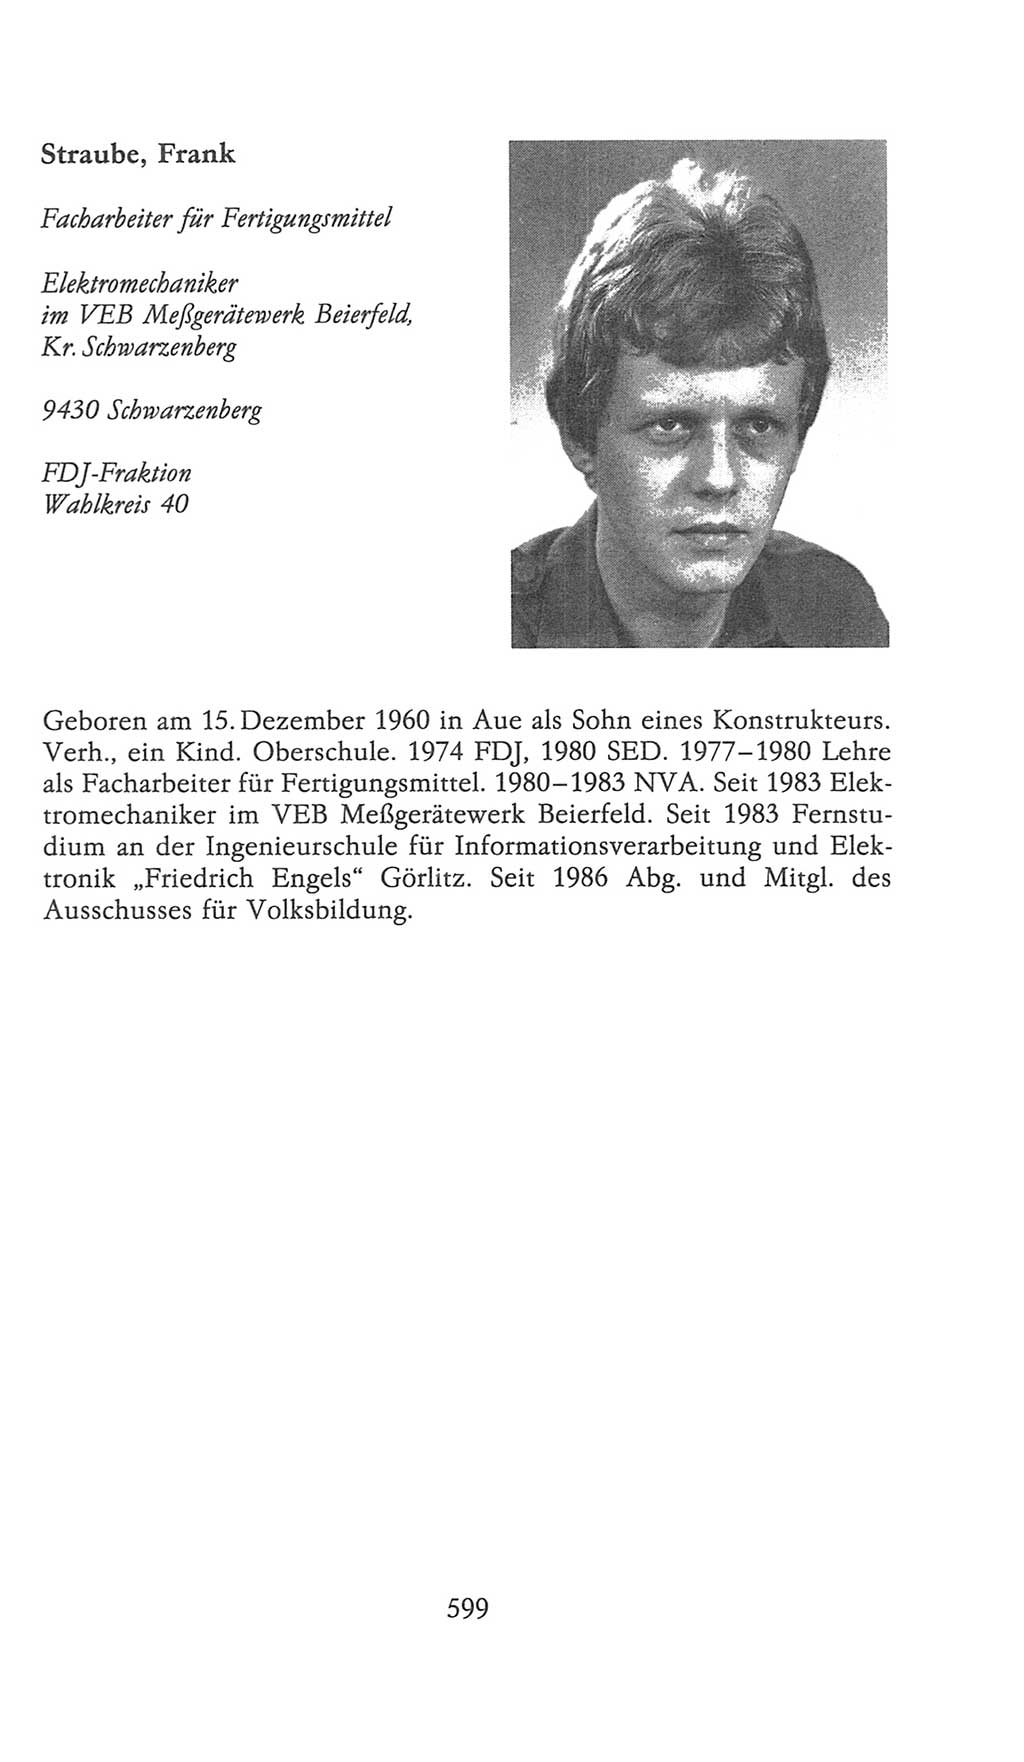 Volkskammer (VK) der Deutschen Demokratischen Republik (DDR), 9. Wahlperiode 1986-1990, Seite 599 (VK. DDR 9. WP. 1986-1990, S. 599)